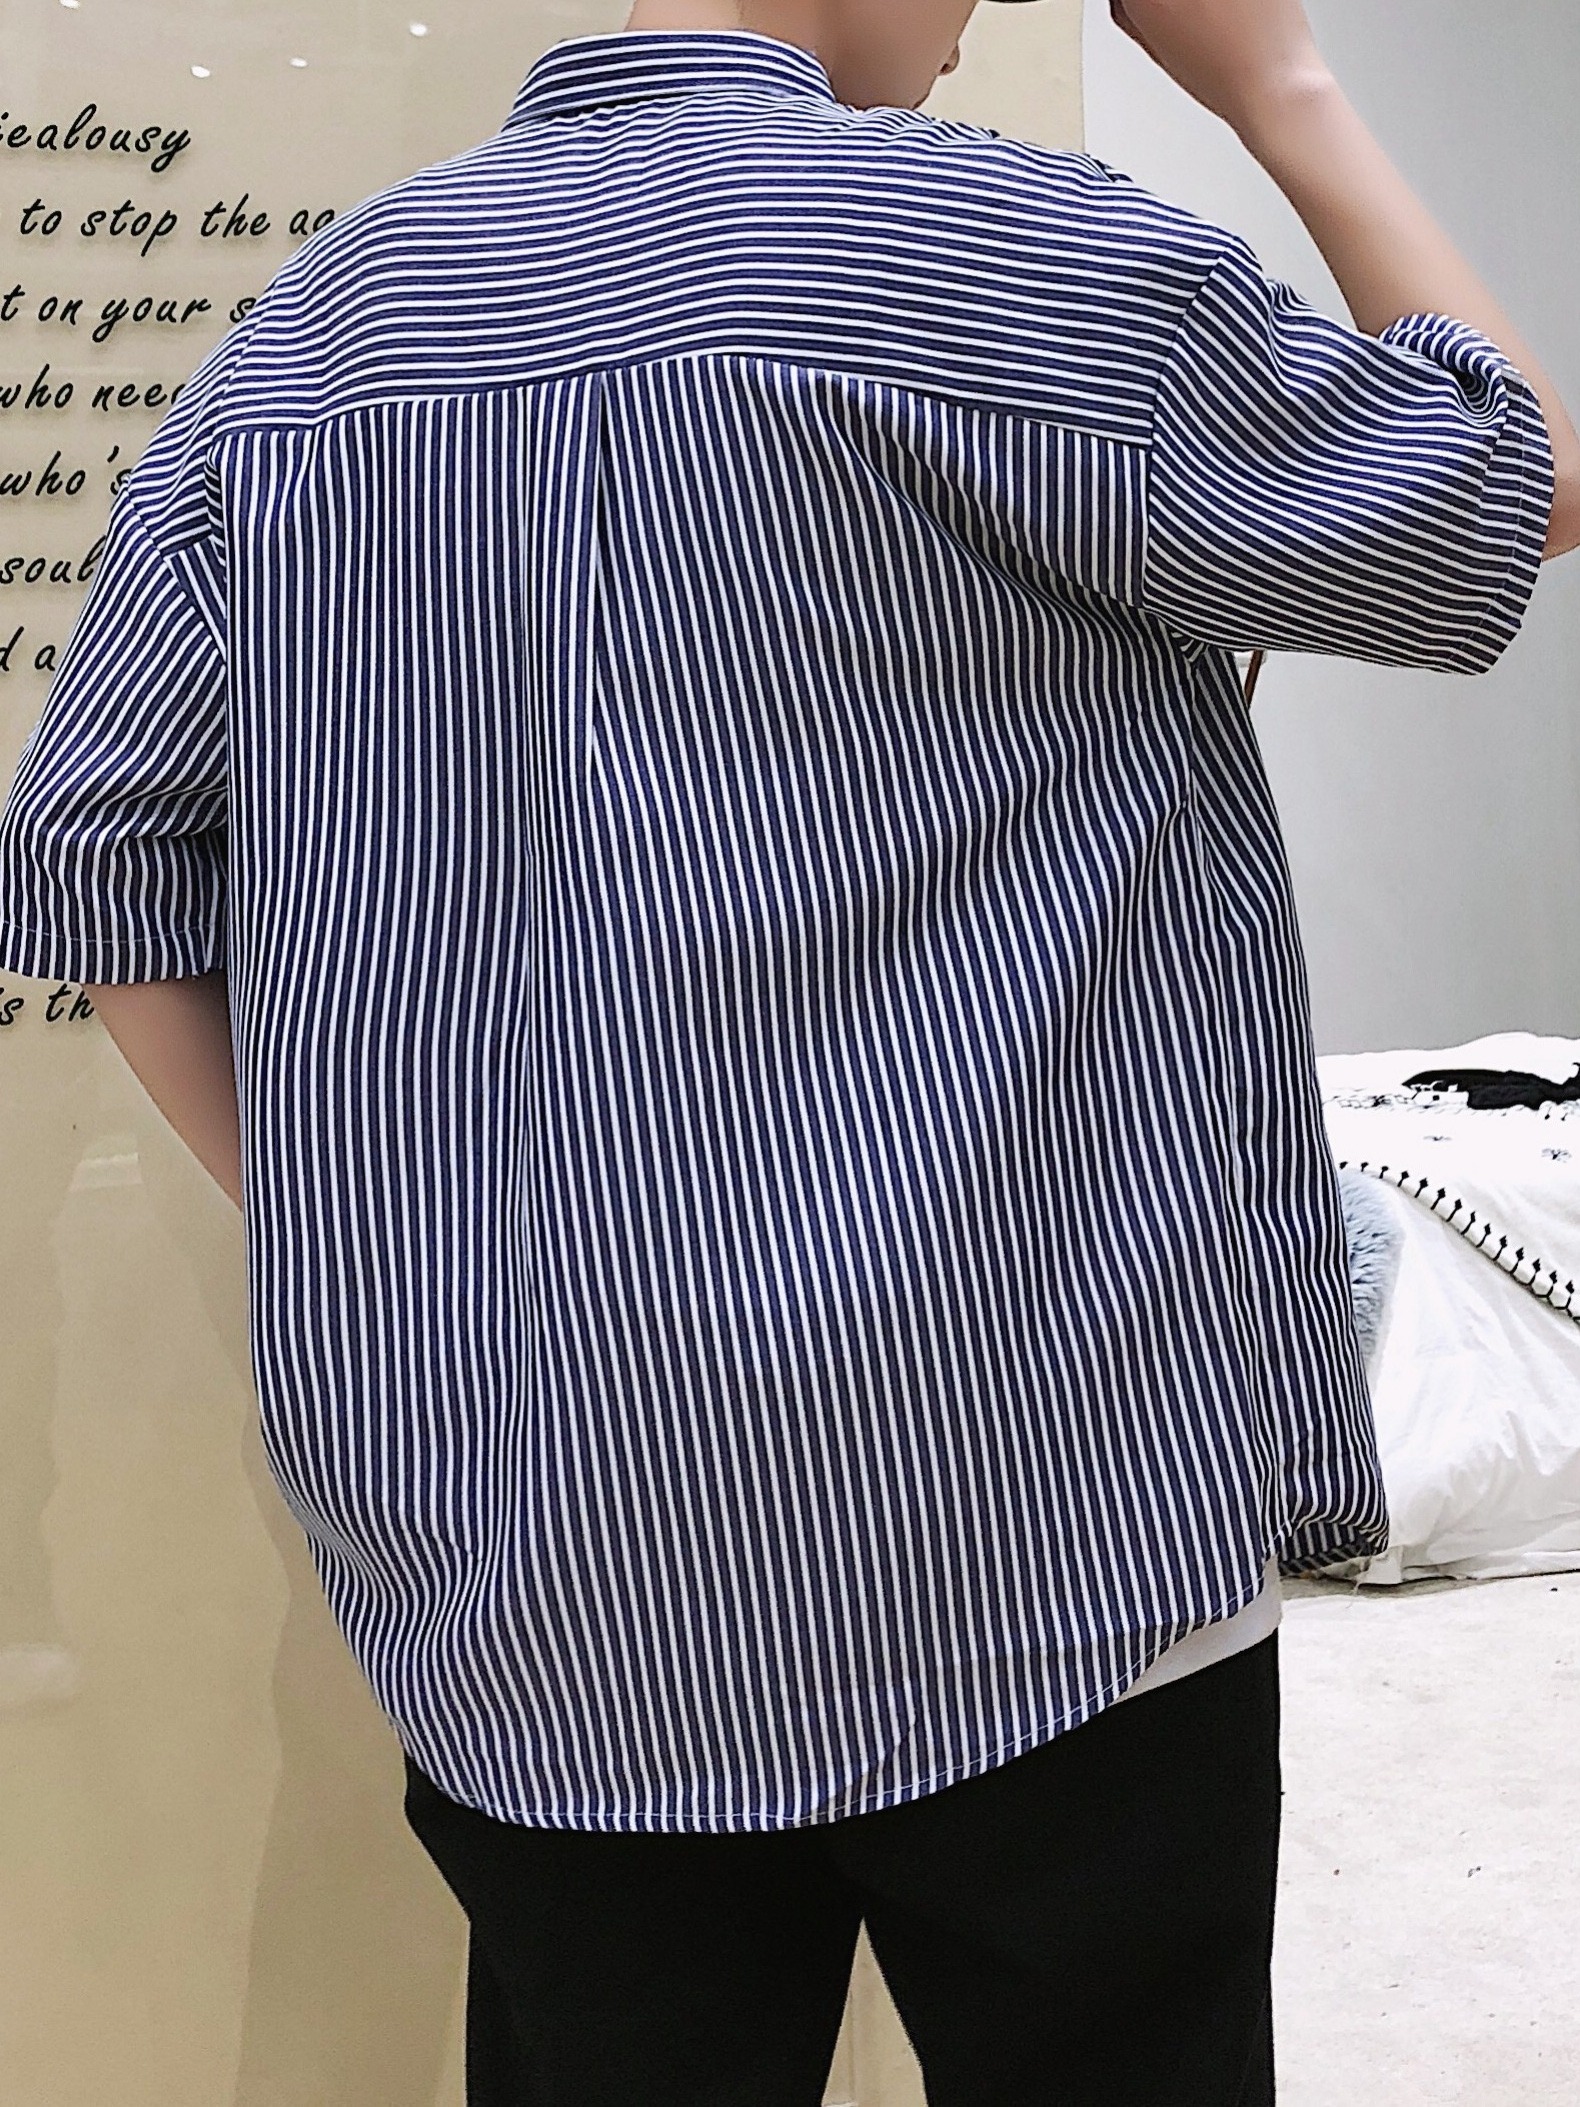 Vertical Striped Short Sleeve Shirt